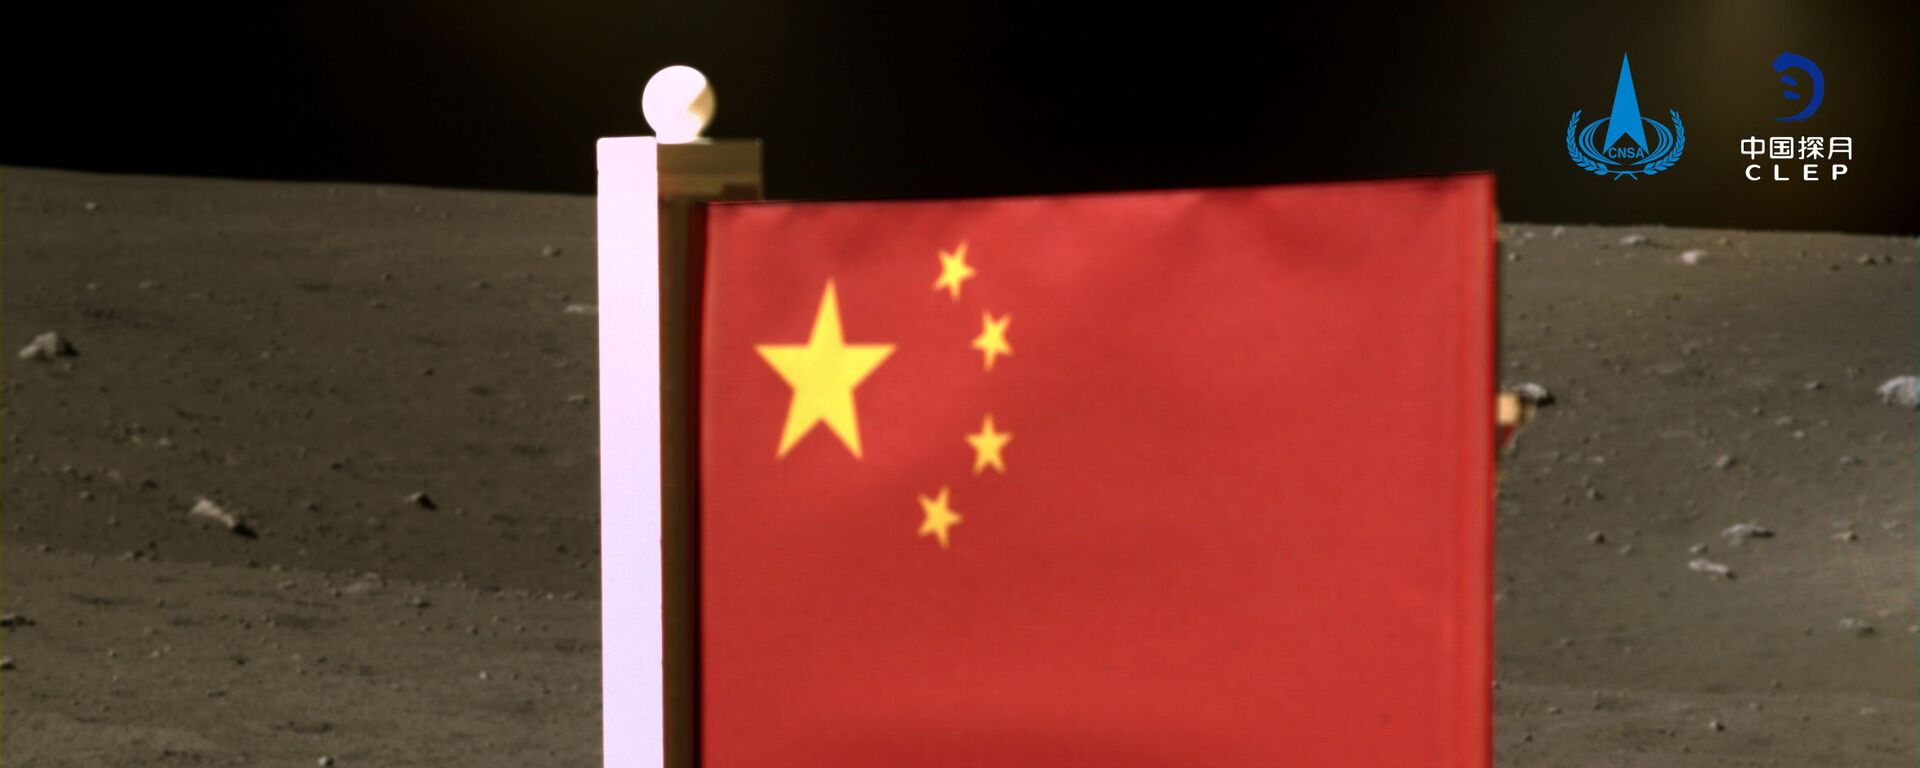  علم الصين الذي أوصله مسبار فضائي تشانغ آه-5 لجمع عينات من القمر وإعادتها، الصين 4 ديسمبر 2020 - سبوتنيك عربي, 1920, 14.03.2021